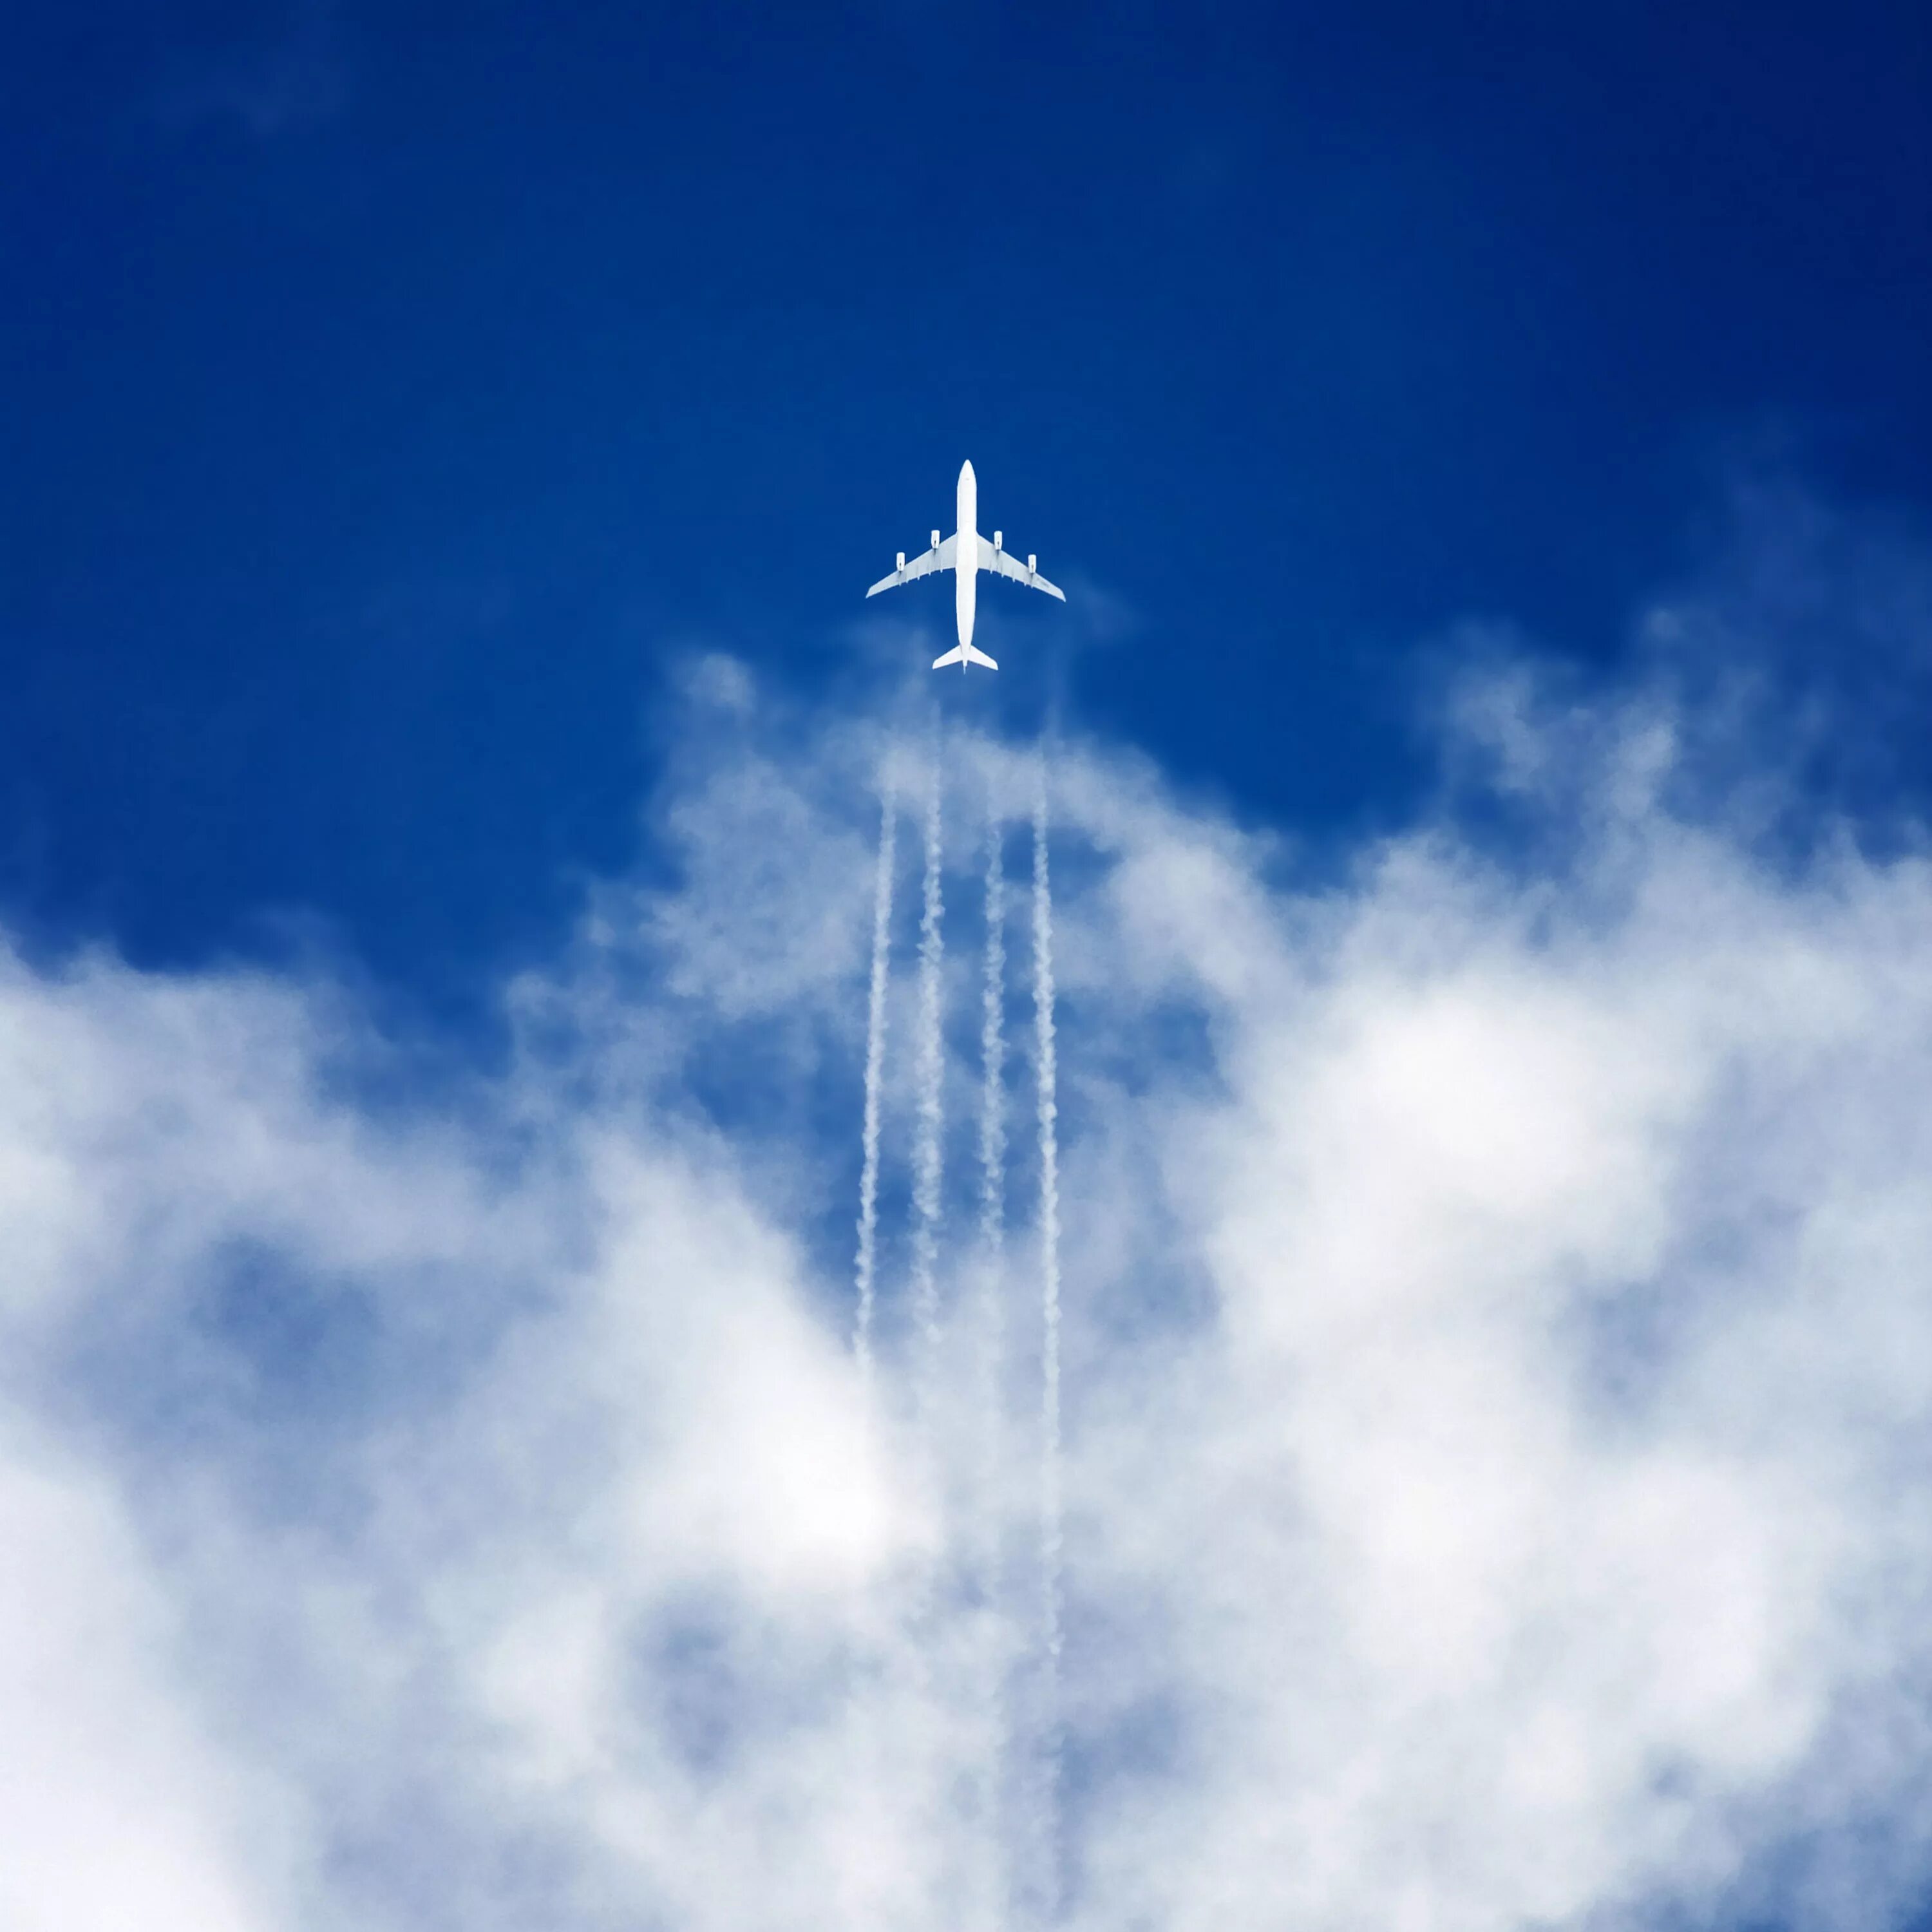 Самолет в небе. Cfvjktn DF yt,t. Самолет в голубом небе. Самолет на фоне неба.